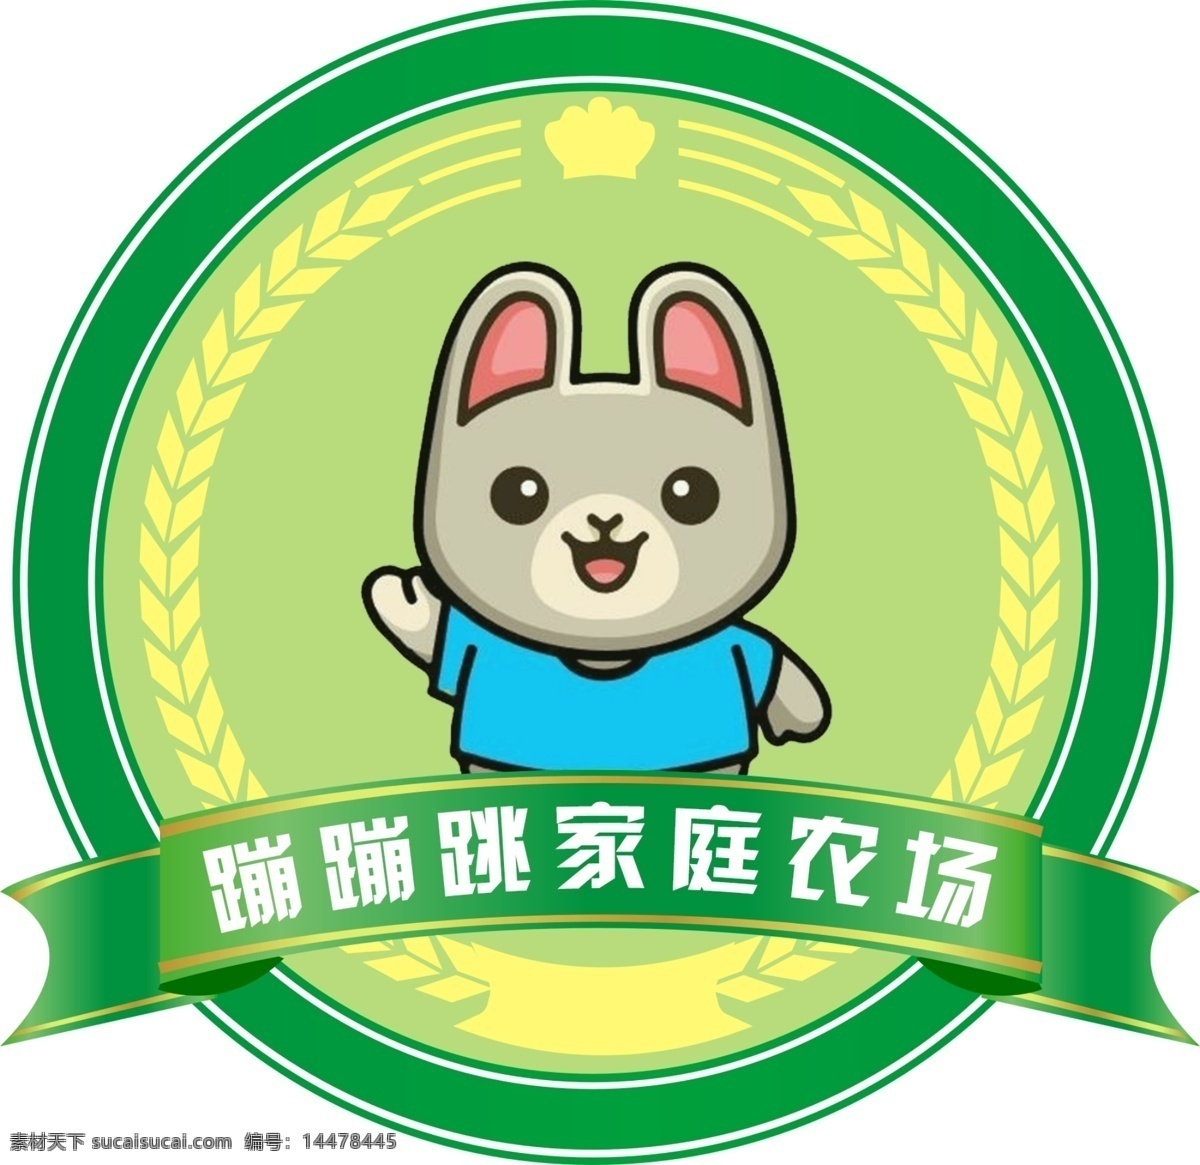 家庭 农场 logo 养兔场标志 蹦蹦跳 养兔场 小白兔 灰兔logo 标志 广告公司专用